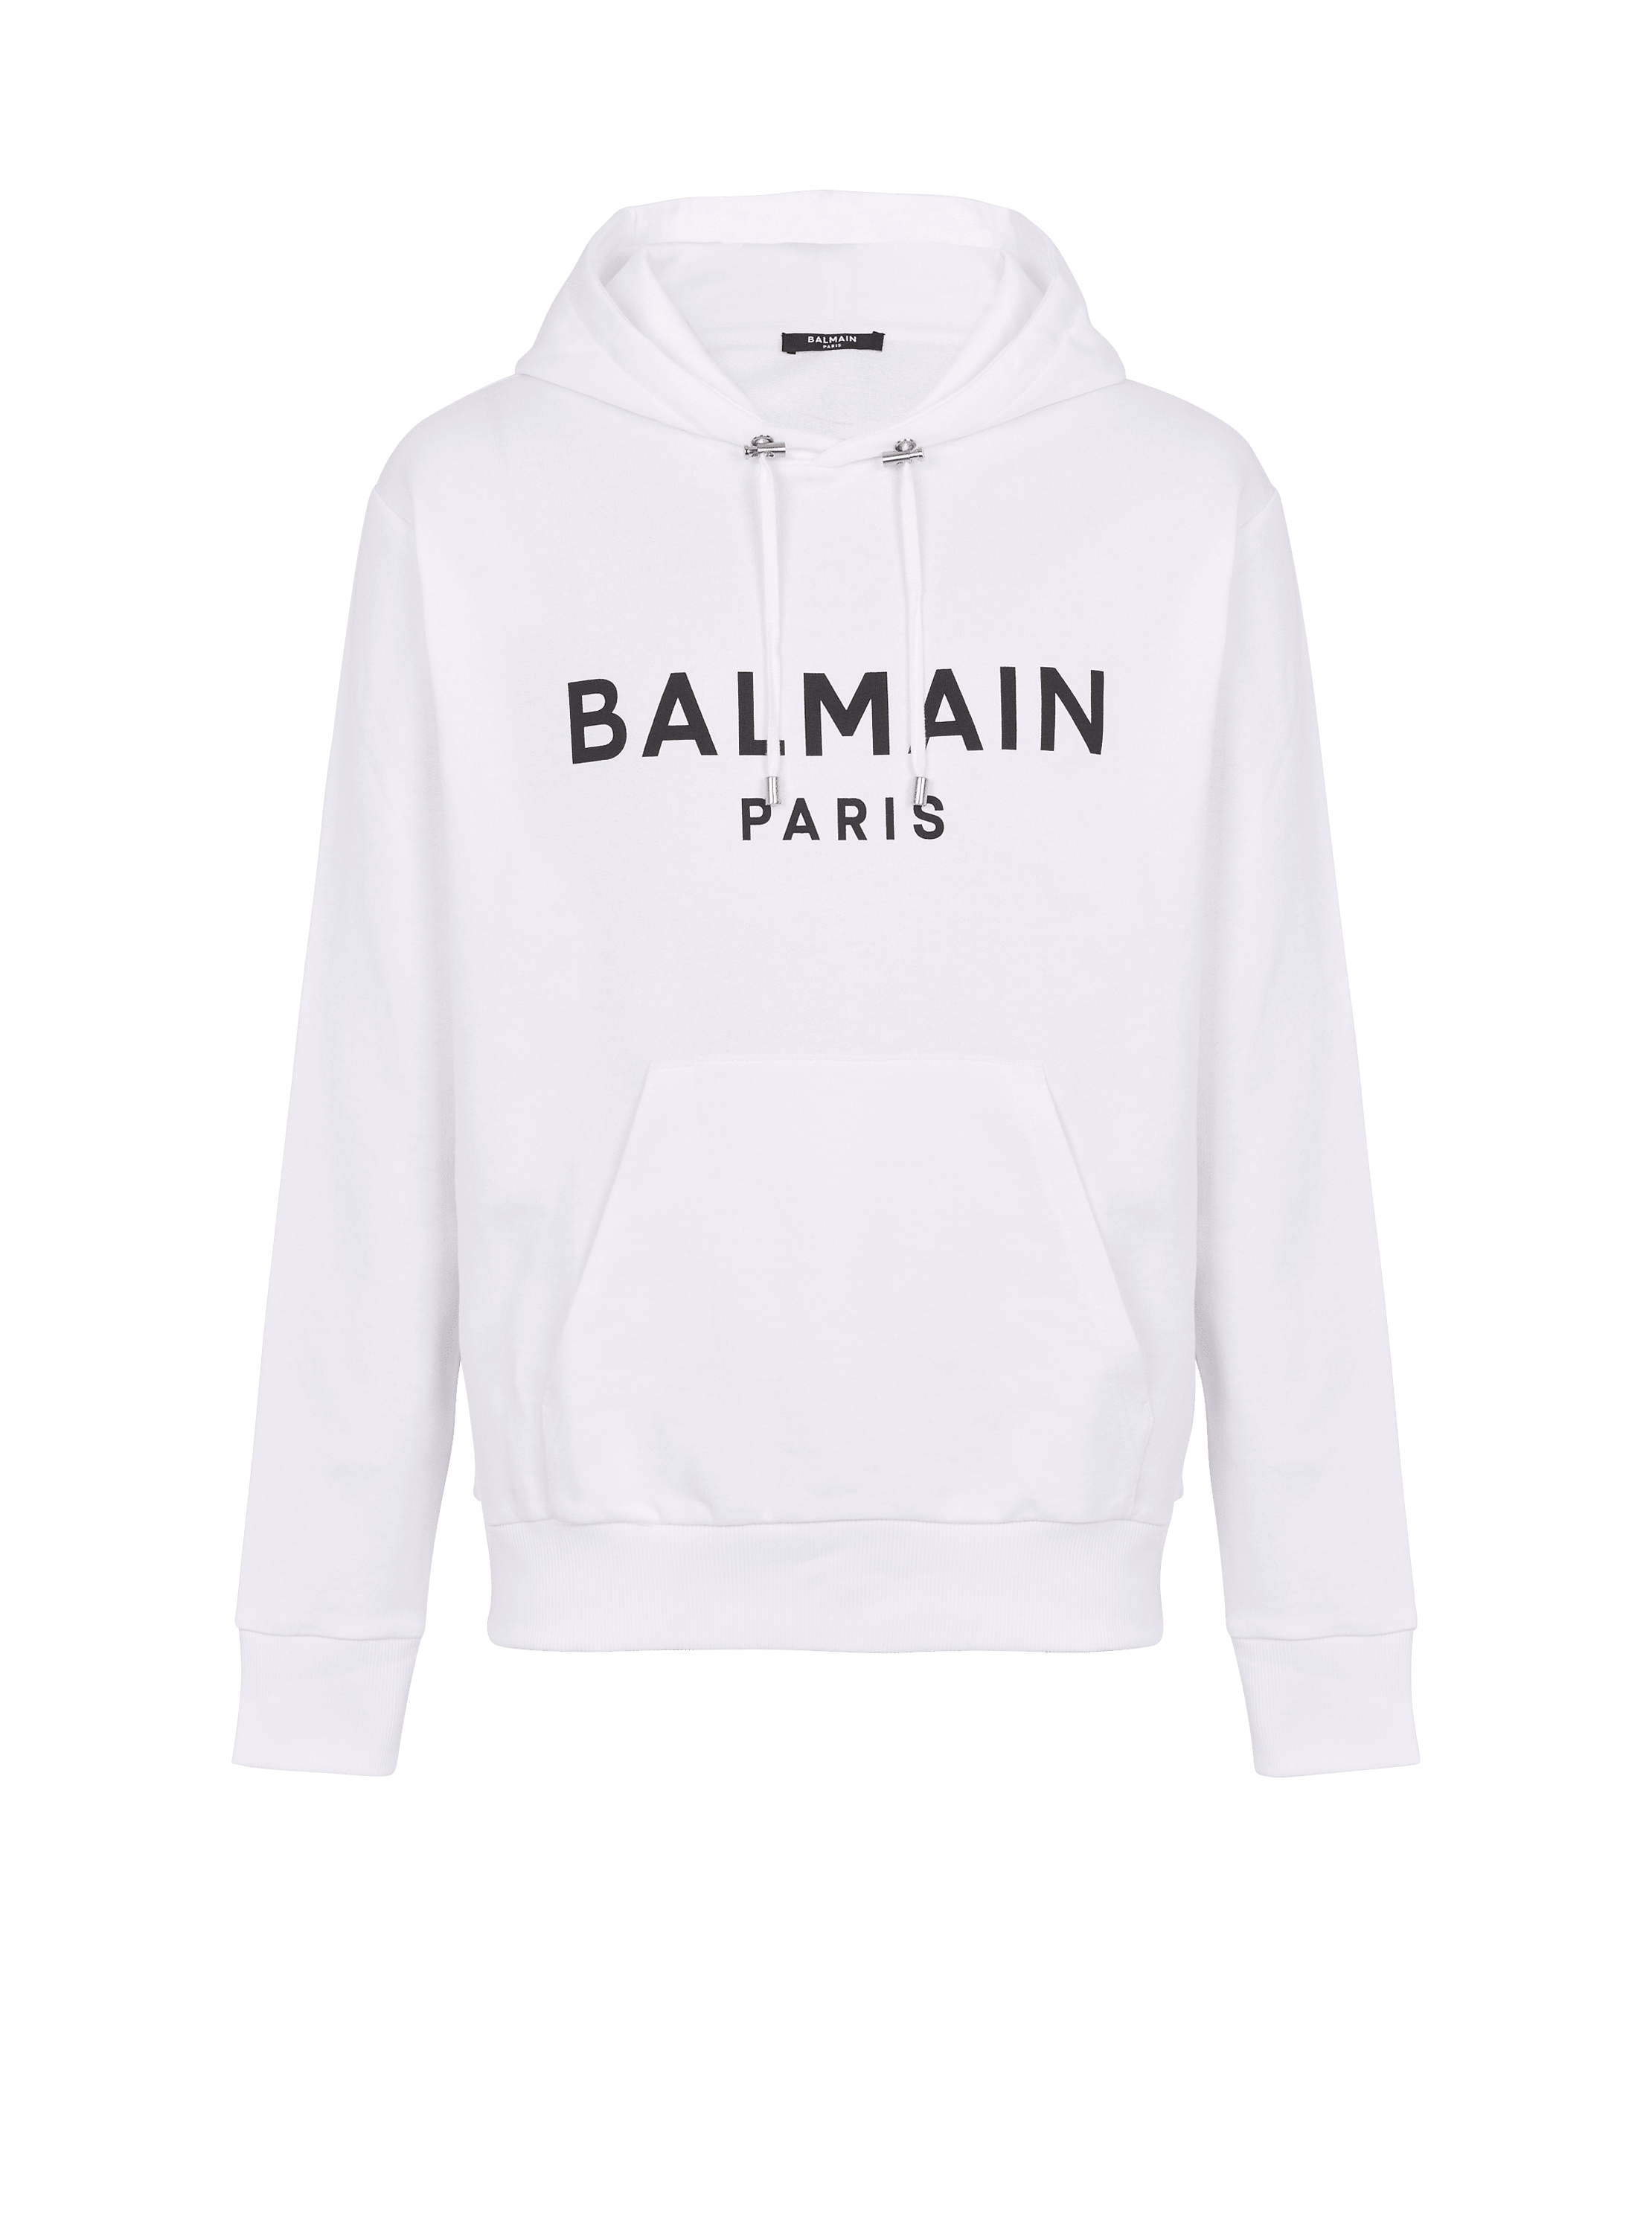 Balmain Paris Kapuzensweatshirt, WeiB, hi-res